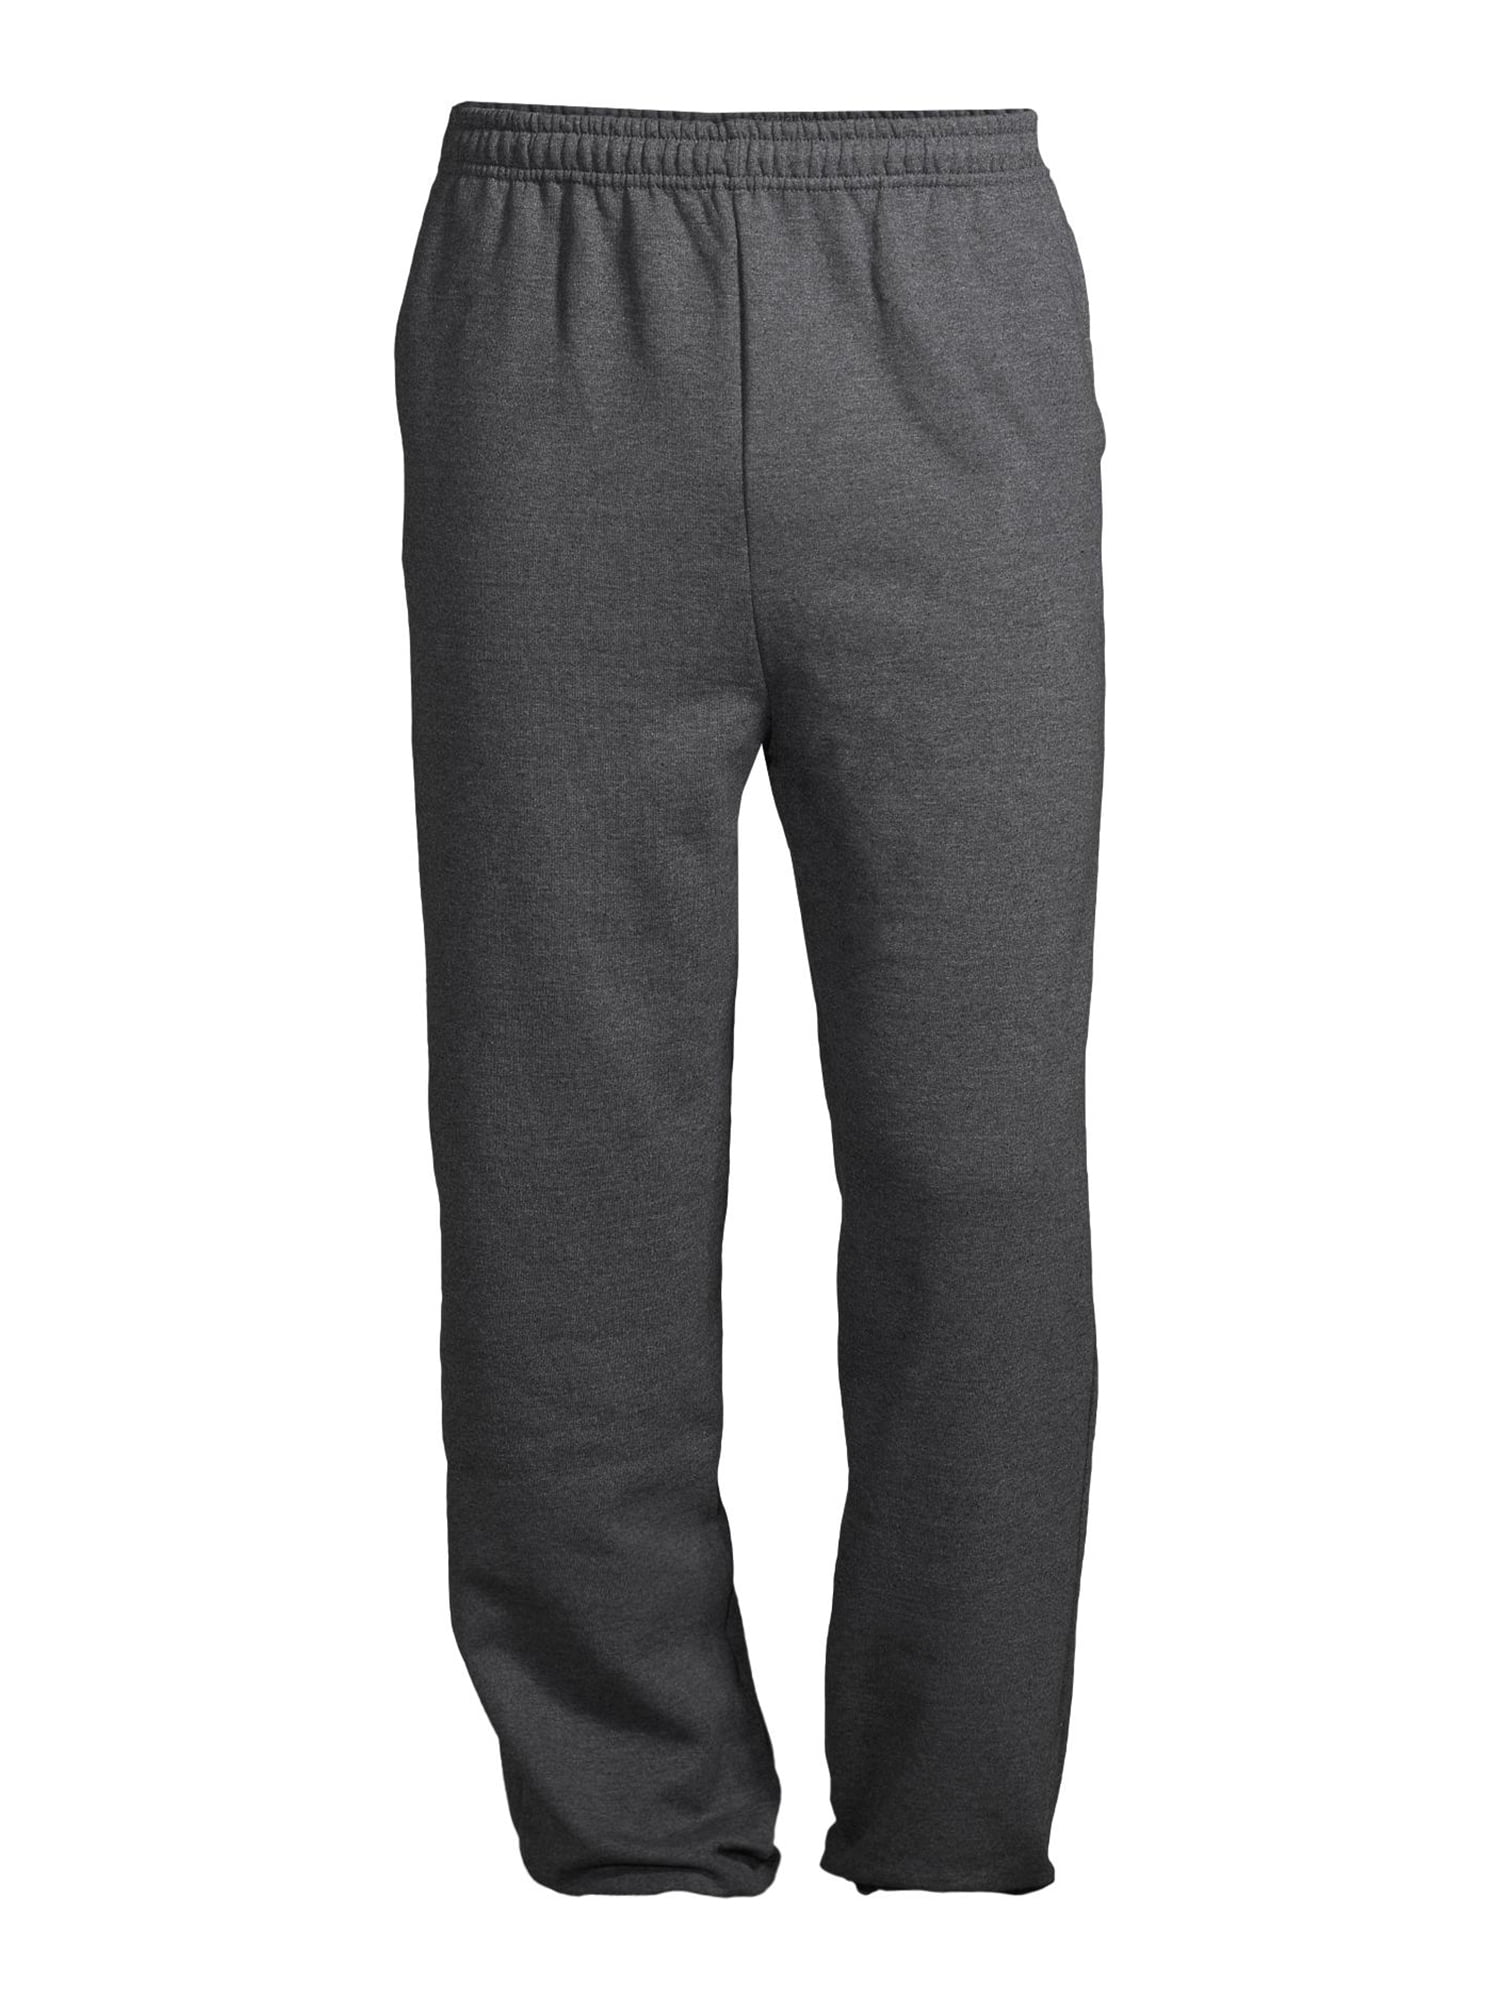 Gildan Unisex Fleece Elastic Bottom Pocketed Sweatpants, up to Size 2XL ...